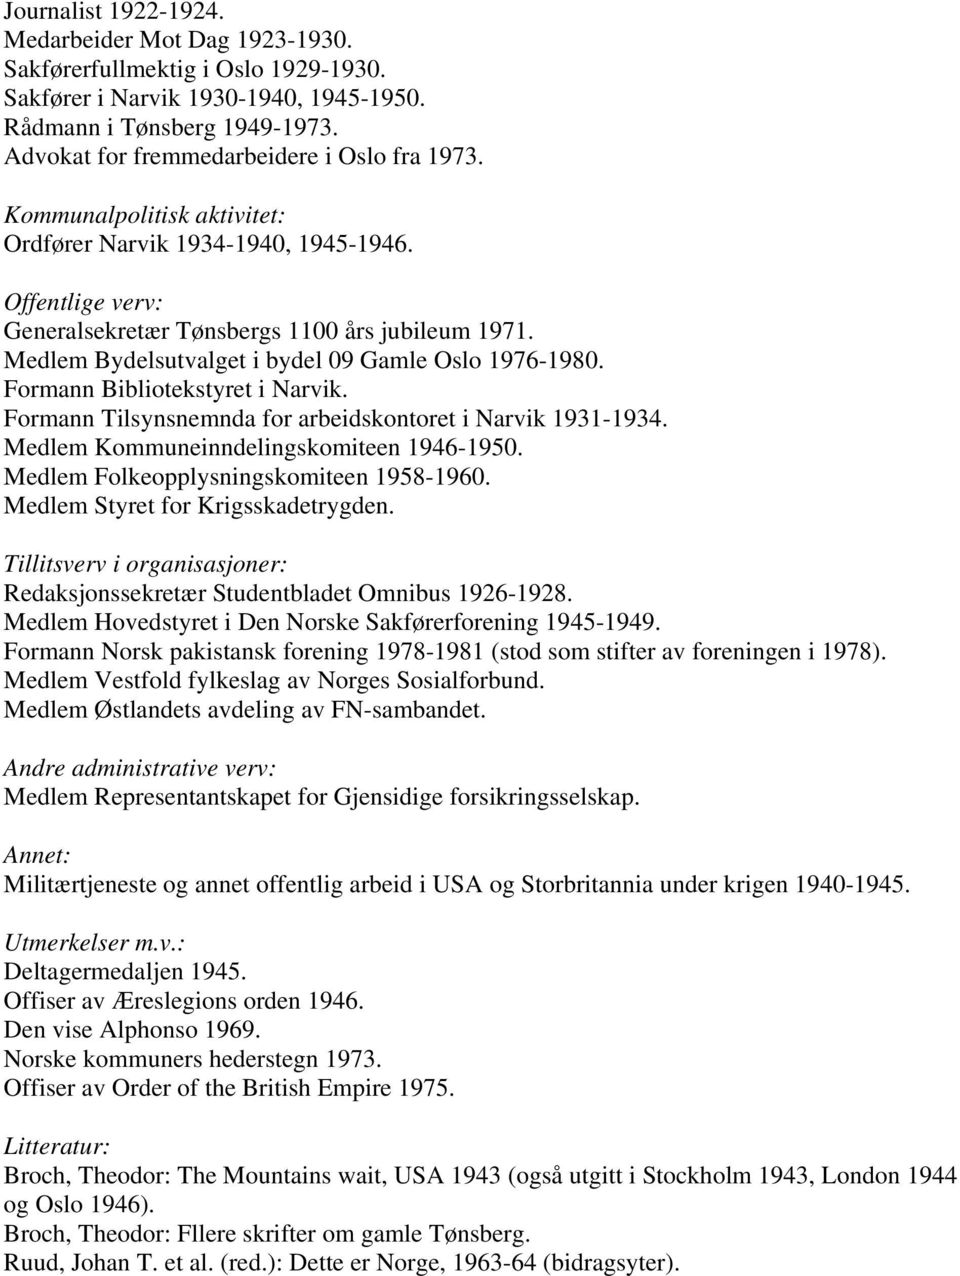 Medlem Bydelsutvalget i bydel 09 Gamle Oslo 1976-1980. Formann Bibliotekstyret i Narvik. Formann Tilsynsnemnda for arbeidskontoret i Narvik 1931-1934. Medlem Kommuneinndelingskomiteen 1946-1950.